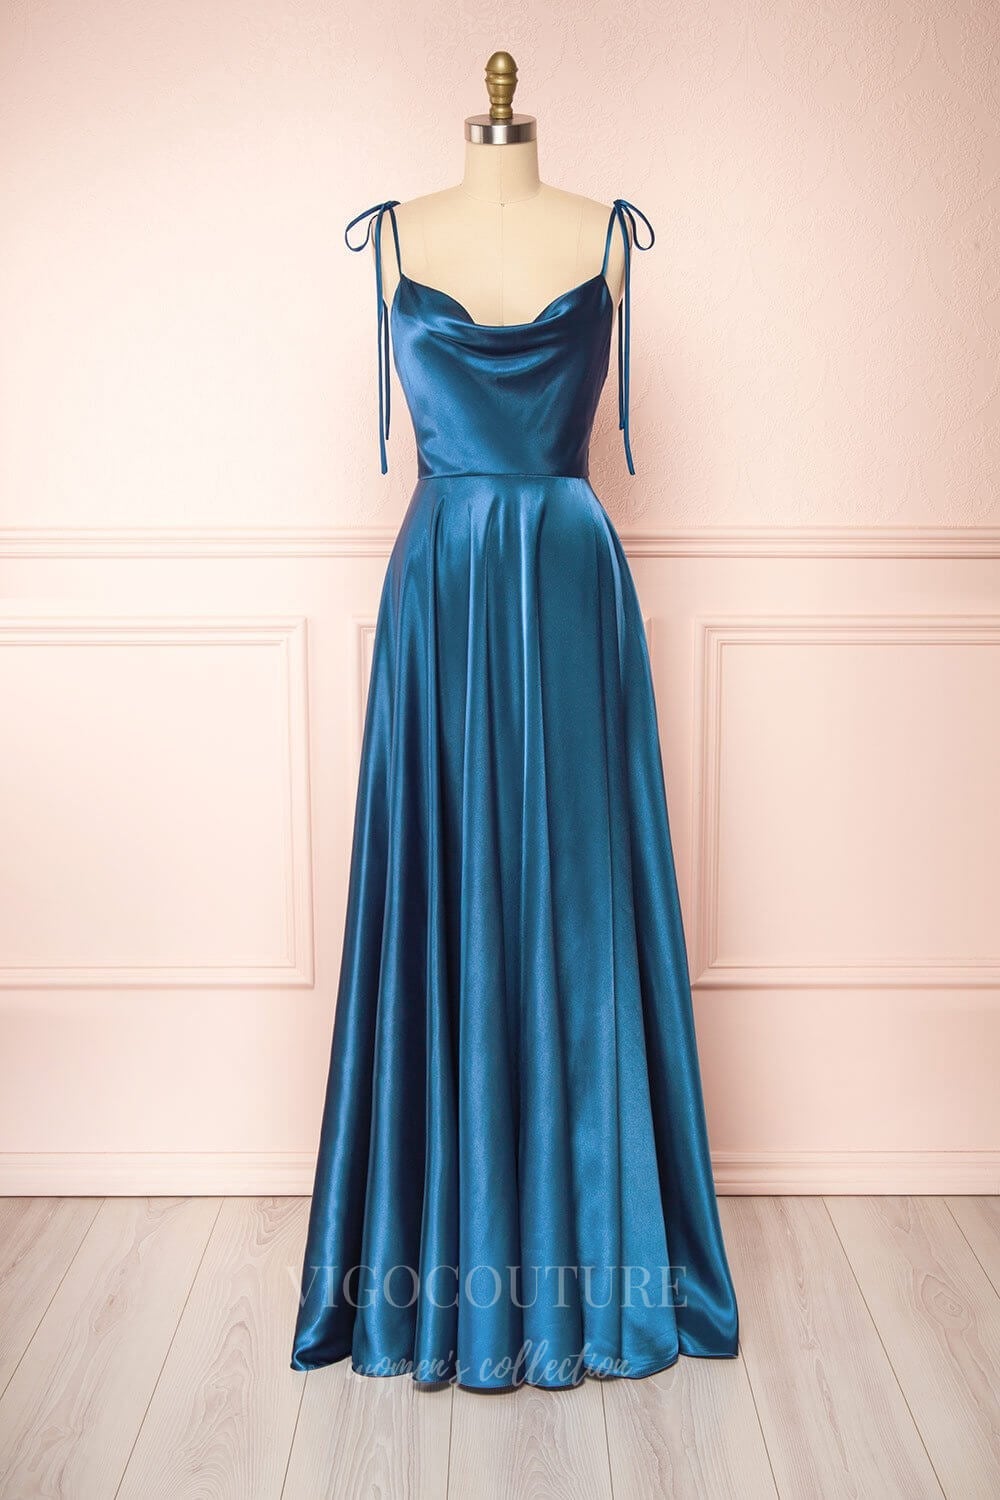 vigocouture-Satin Spaghetti Strap Prom Dress 20577-Prom Dresses-vigocouture-Blue-US2-